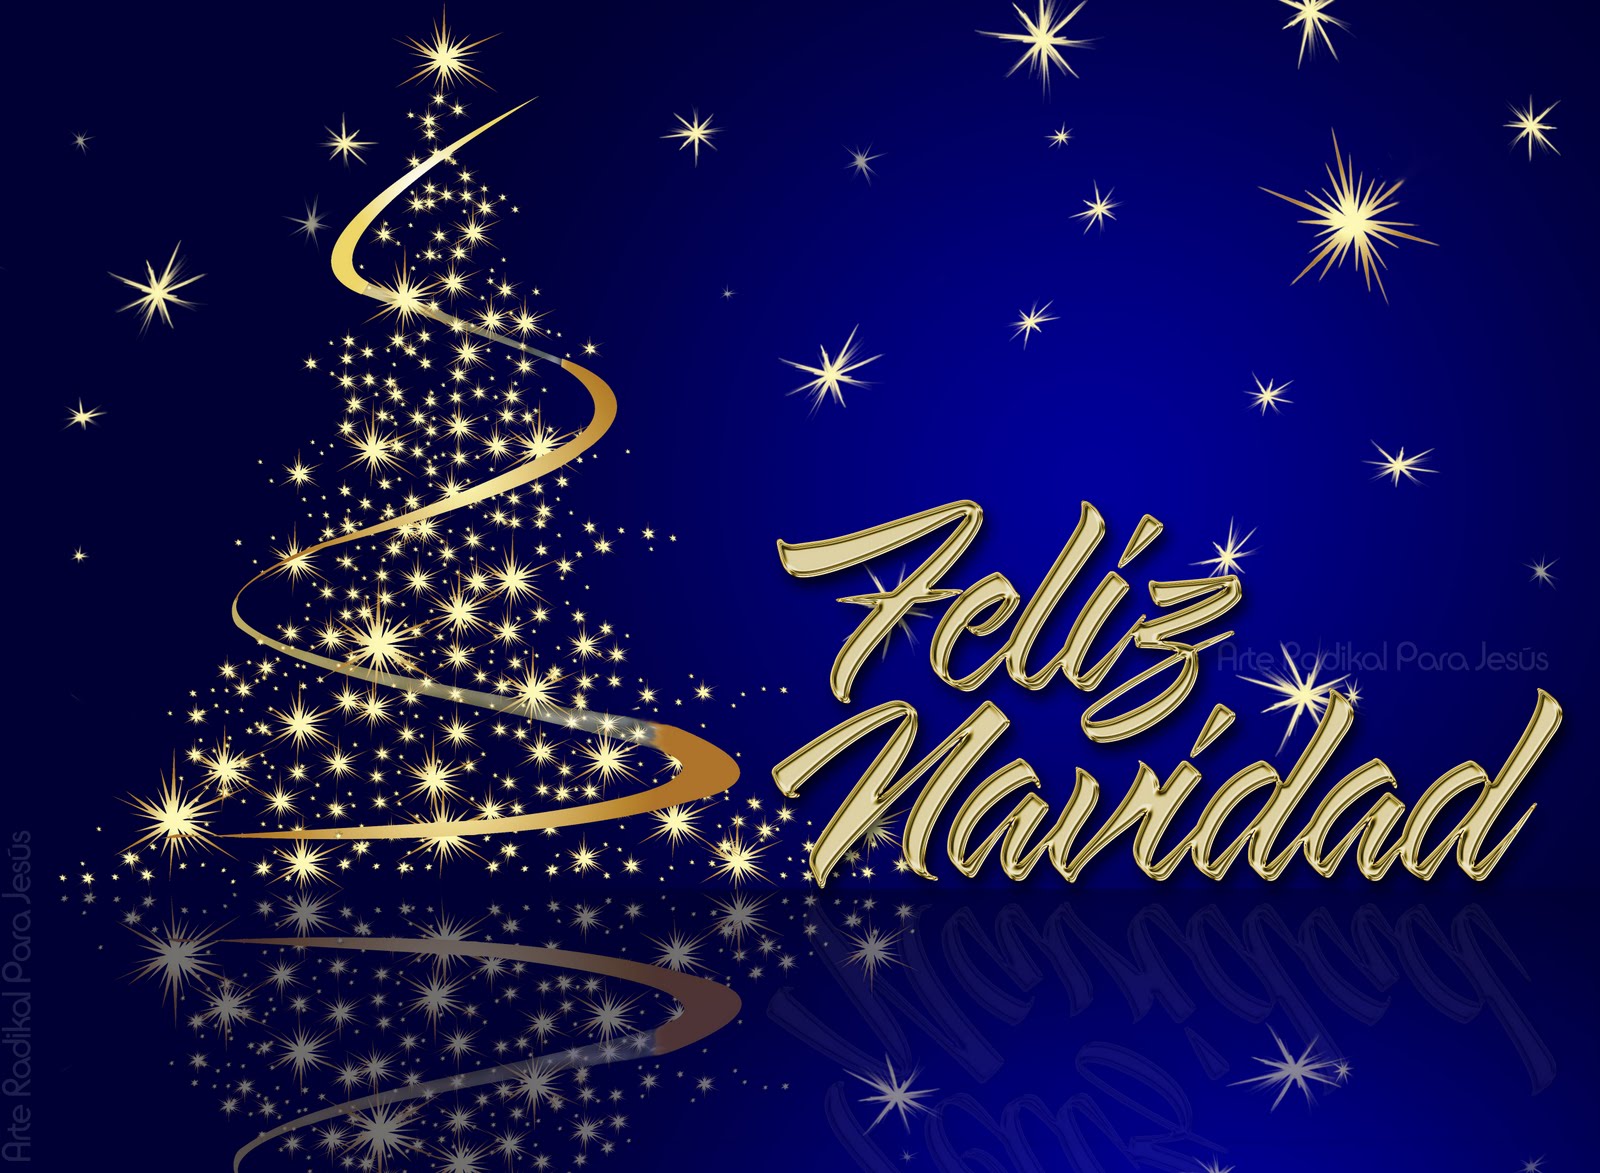 壁紙de navidad,テキスト,クリスマス・イブ,フォント,クリスマスツリー,クリスマスの飾り